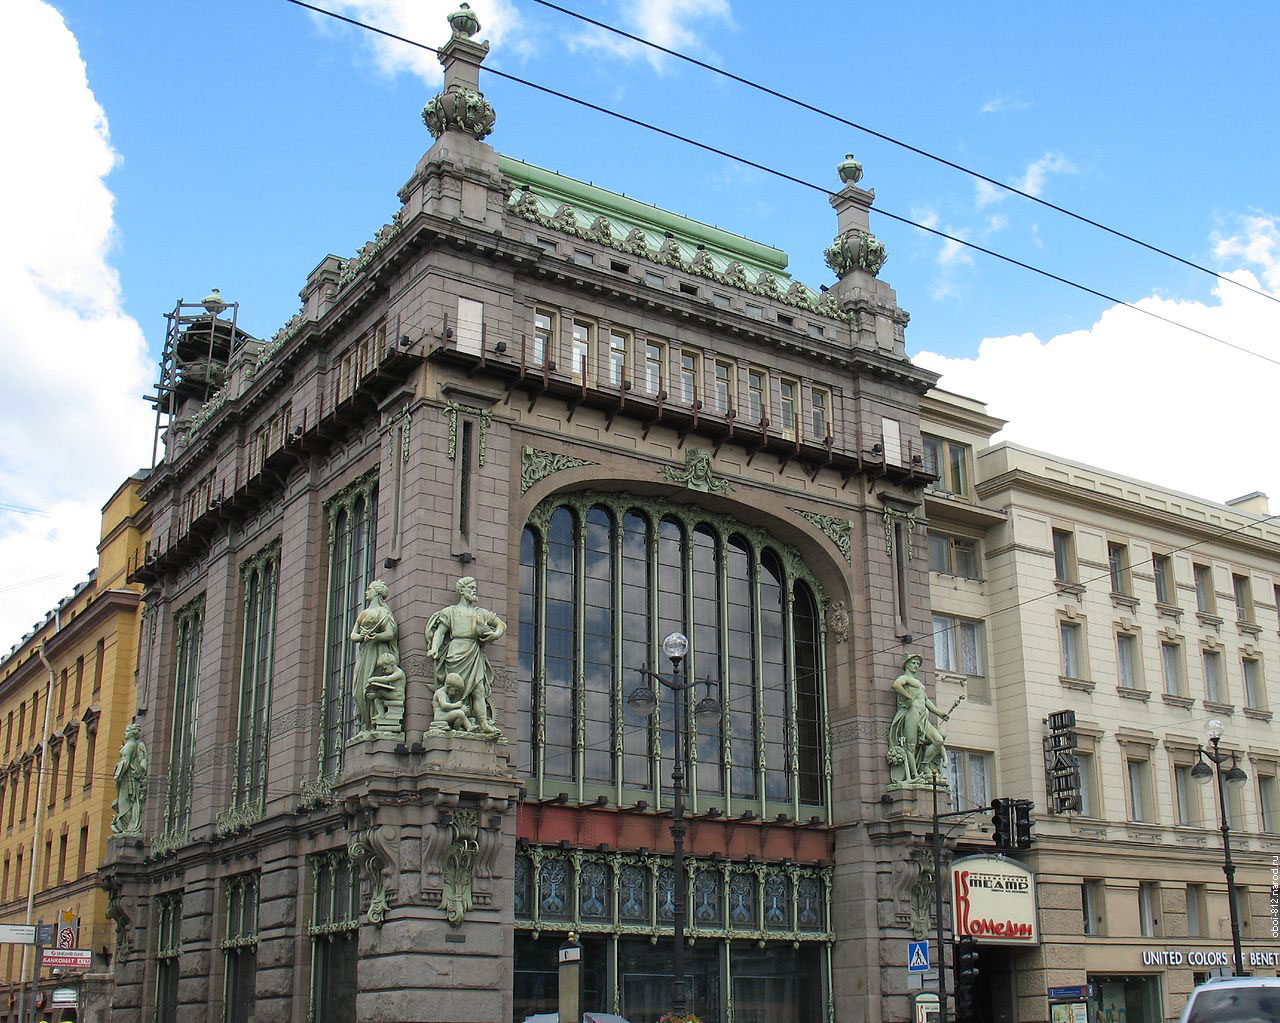 Елесеевский универмаг в Петербурге, на фасаде универмага установлены скульптуры символизирующие Промышленность, Торговлю, Искусство и Науку